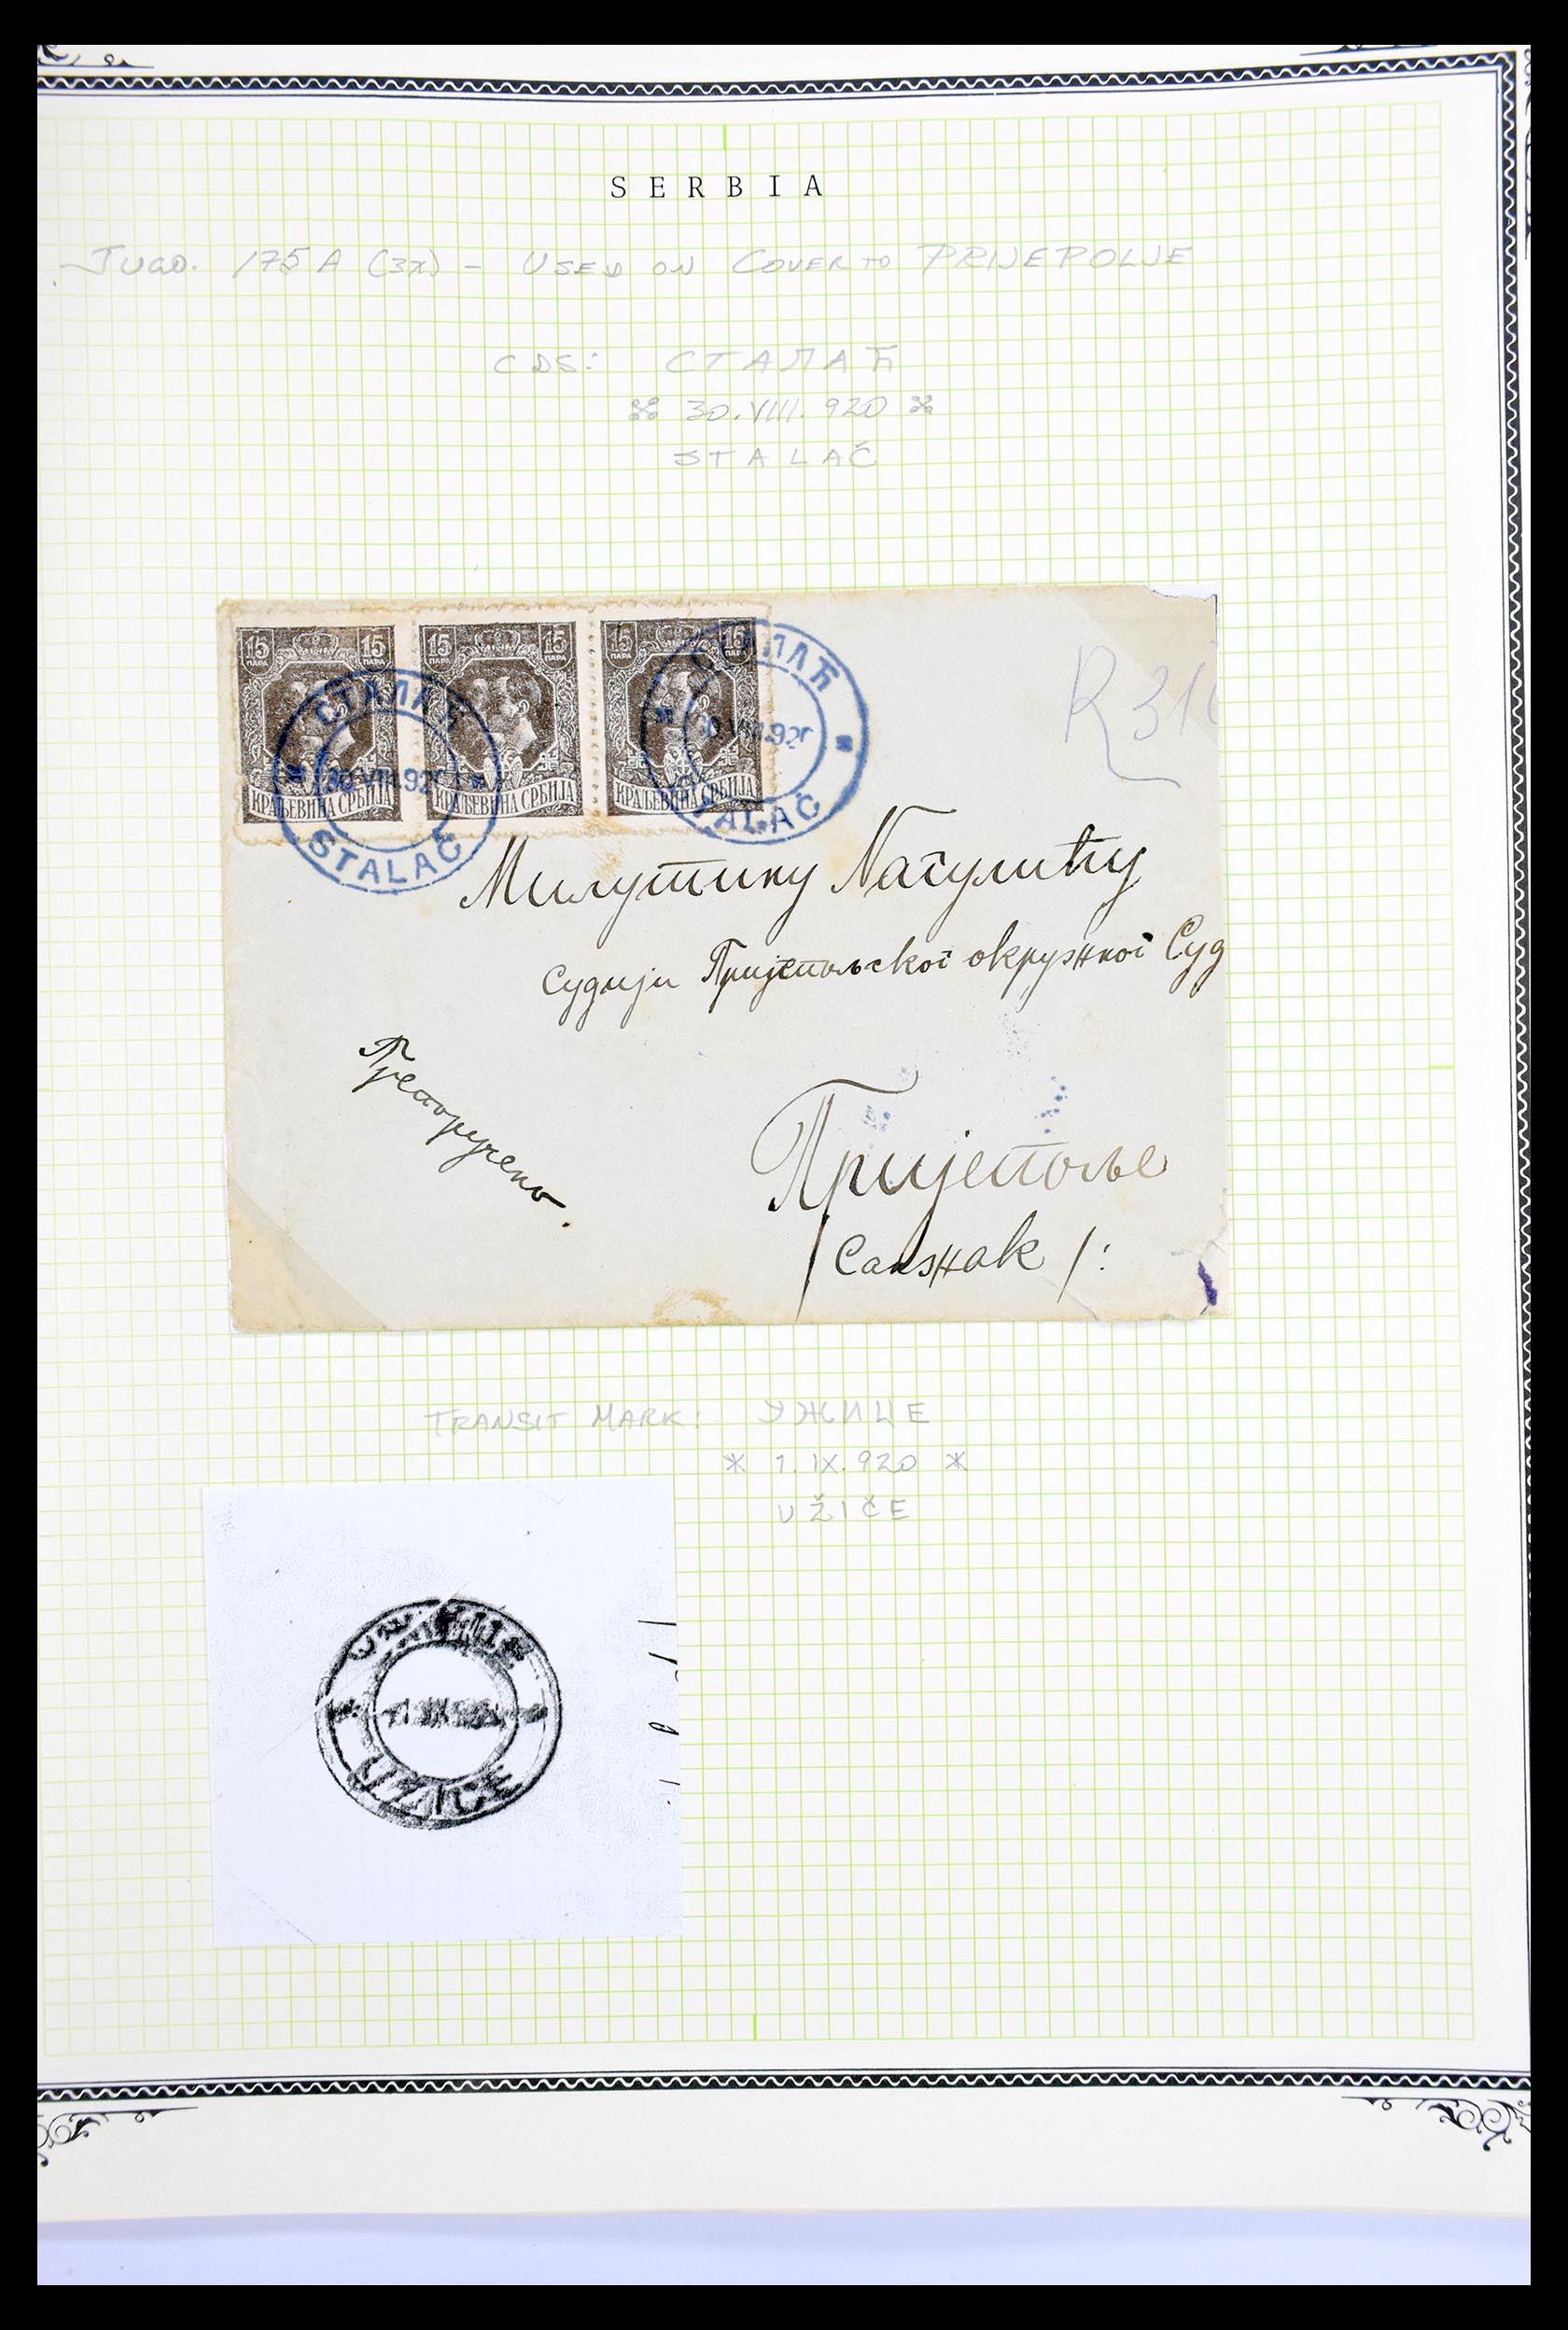 30281 146 - 30281 Servië gespecialiseerd 1880-1921.